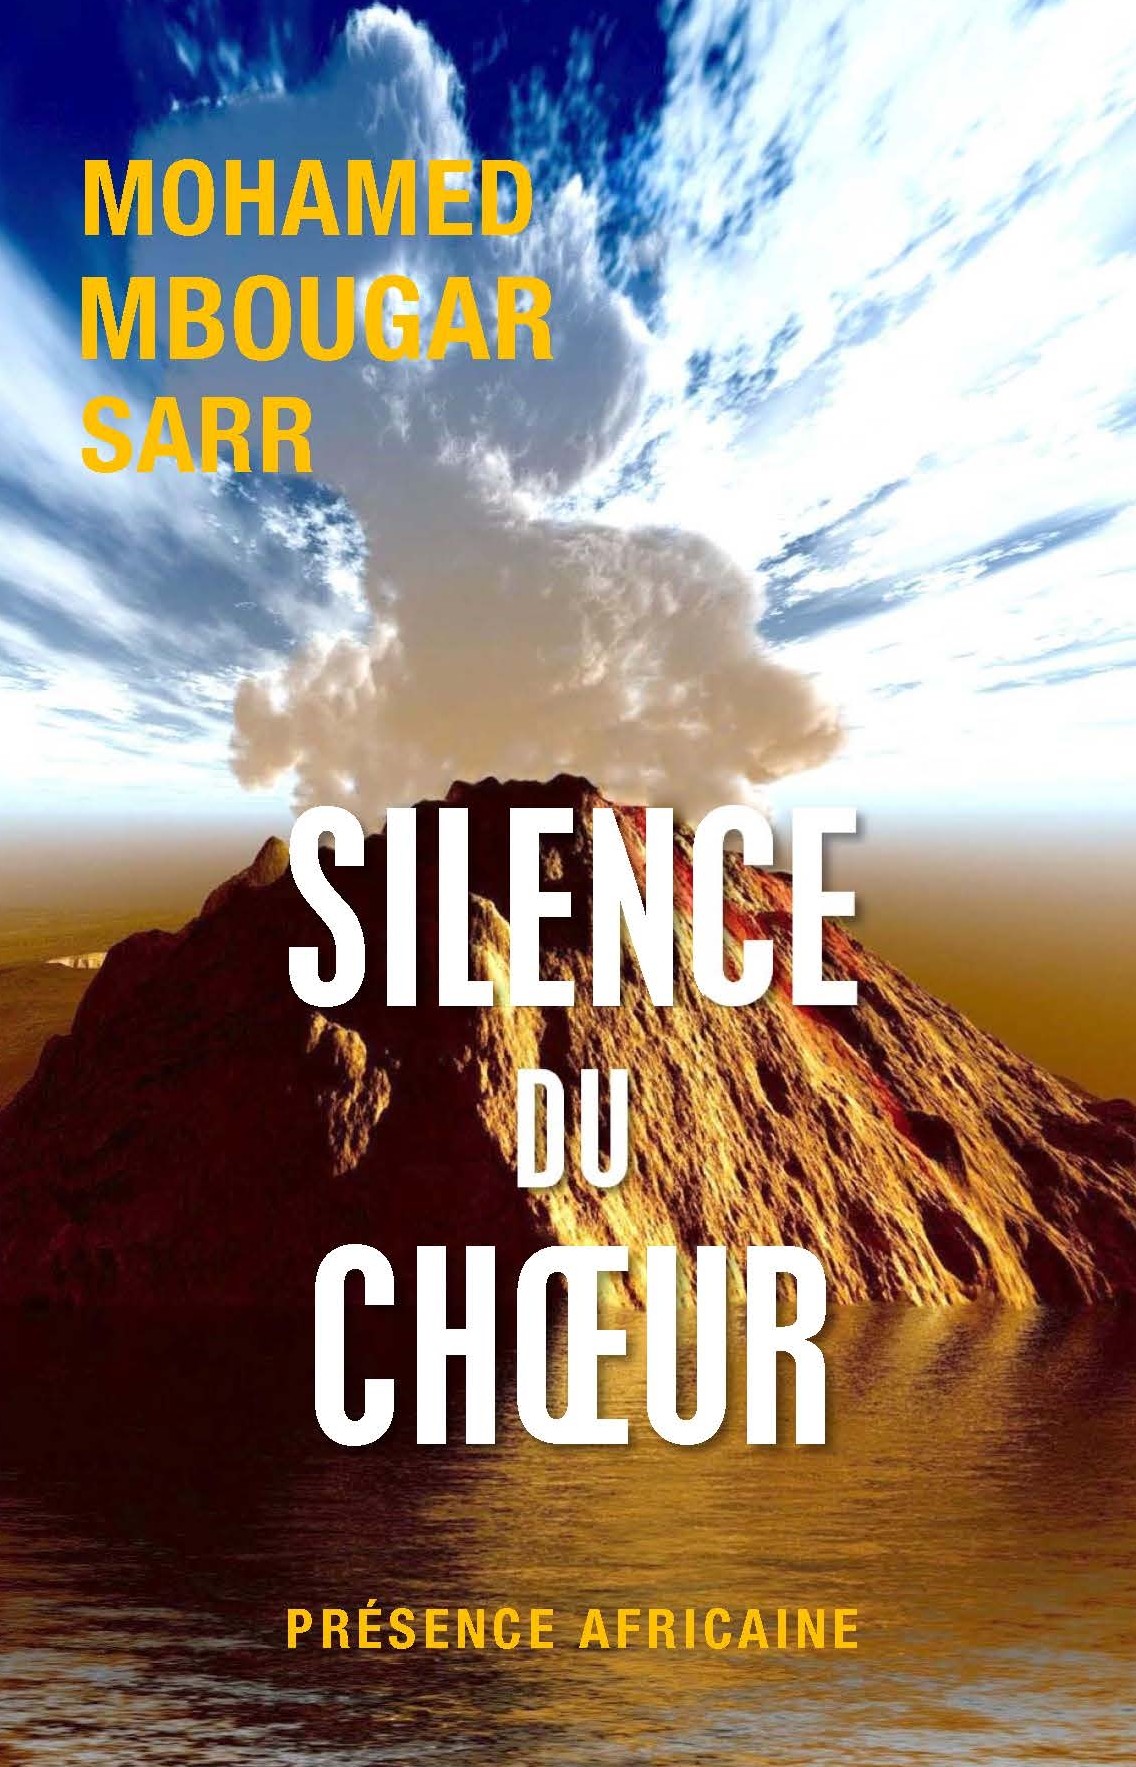 « Silence du choeur » de Mohamed Mbougar Sarr en compétition pour le prix OIF des cinq continents